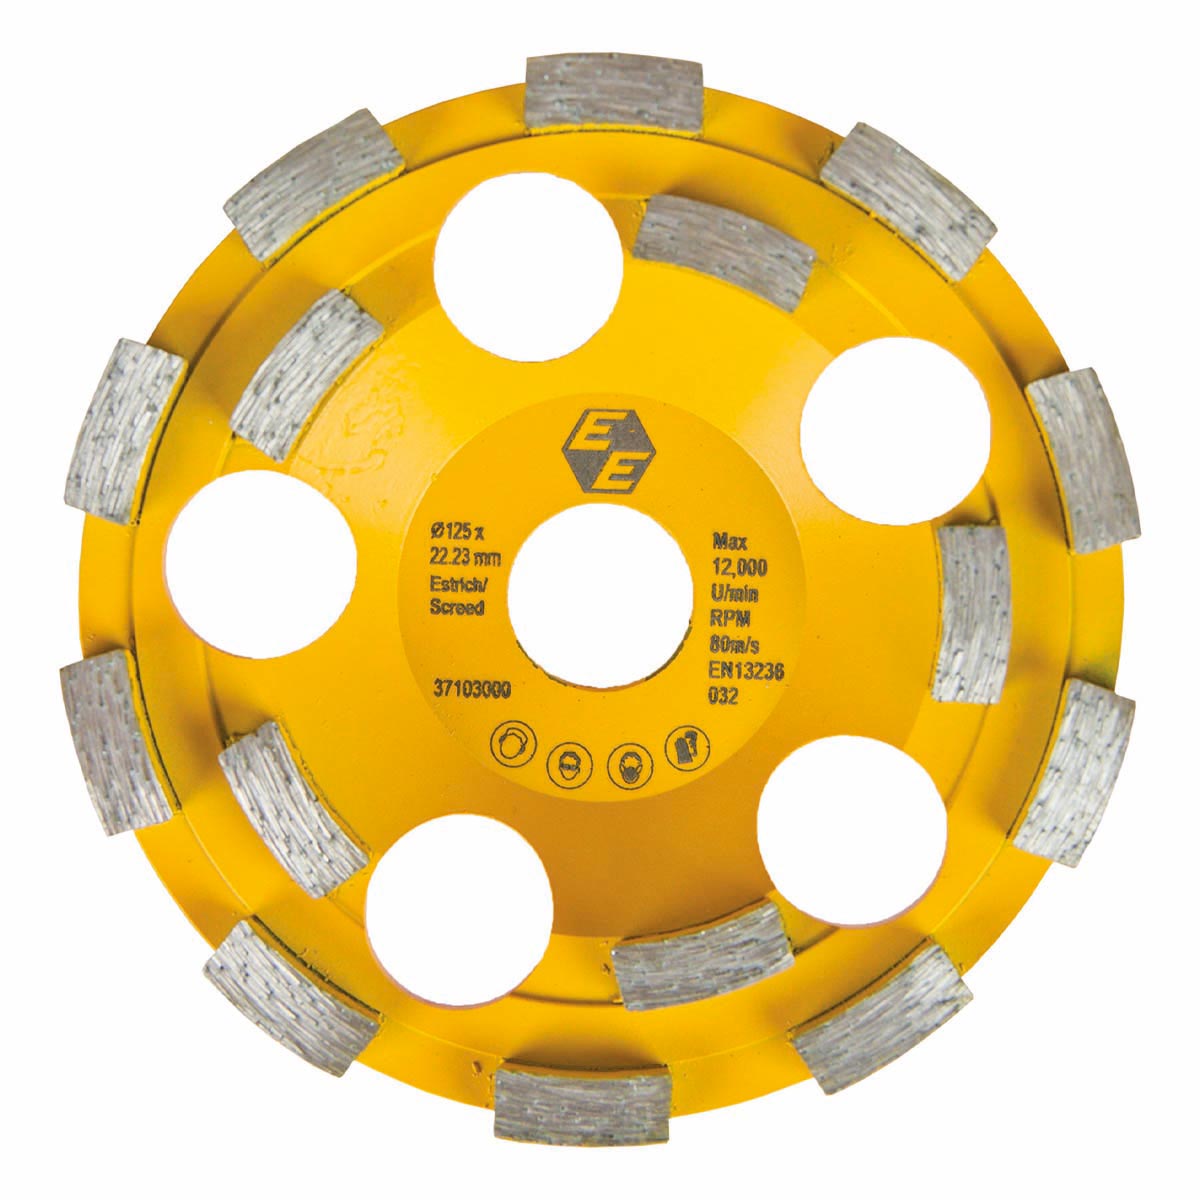 Diamantschleifteller Estrich, gelb, Ø 125 mm